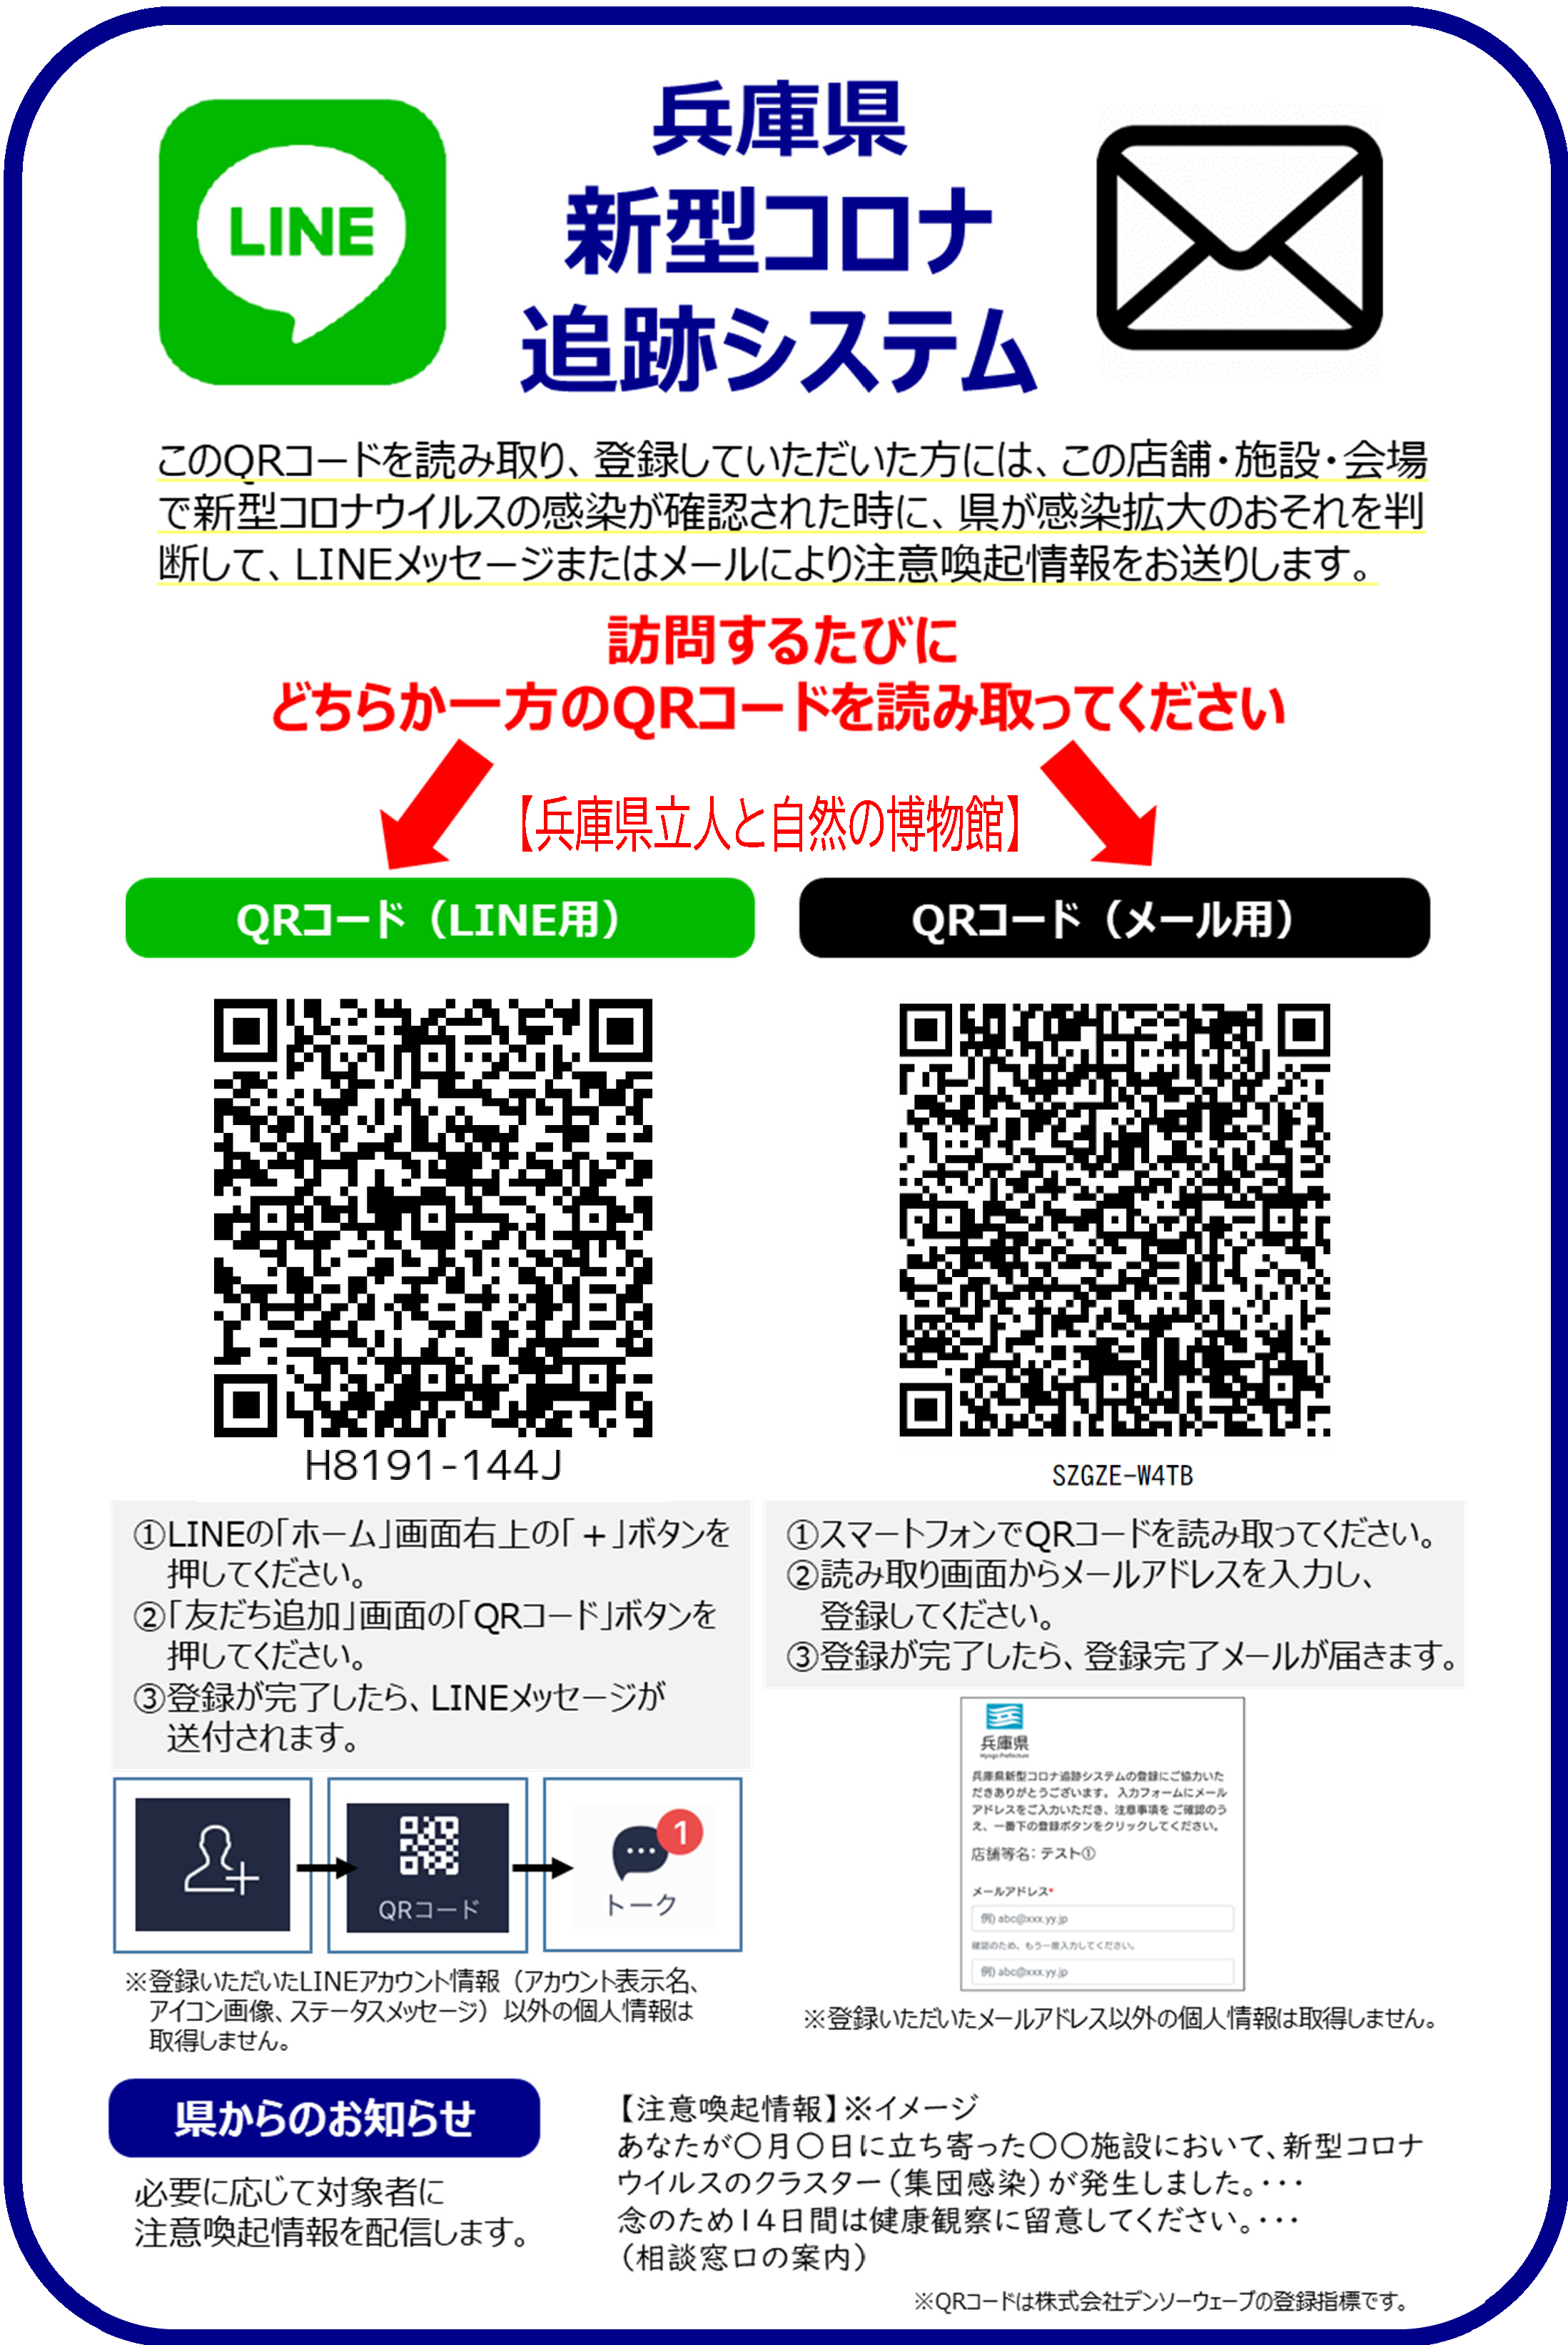 兵庫県新型コロナ追跡システム